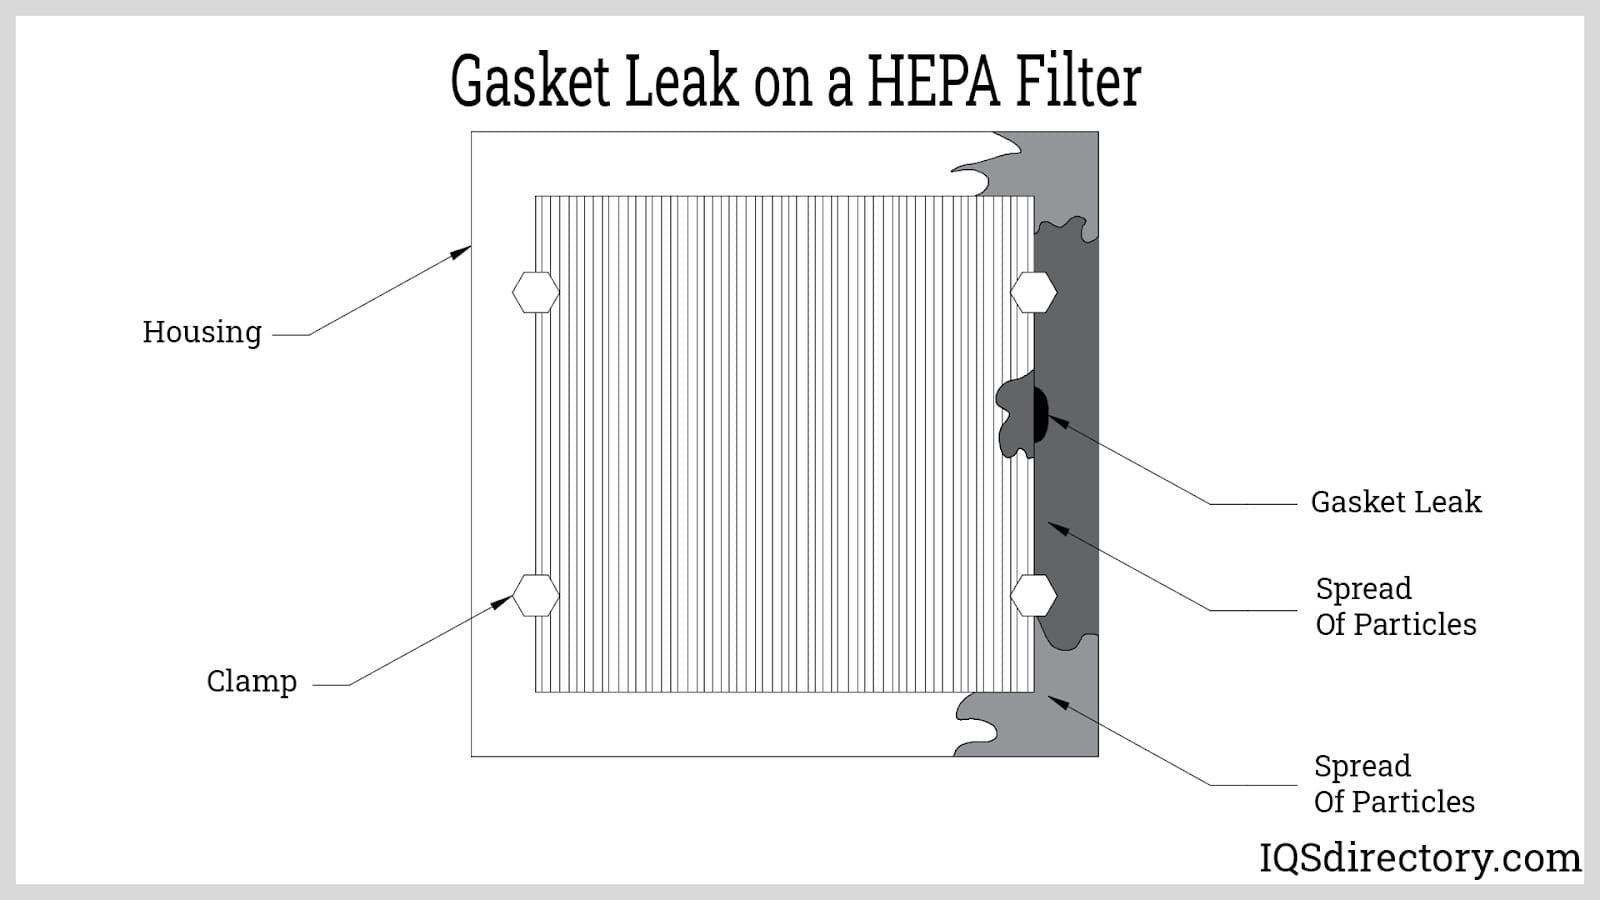 Gasket Leak on a HEPA Filter